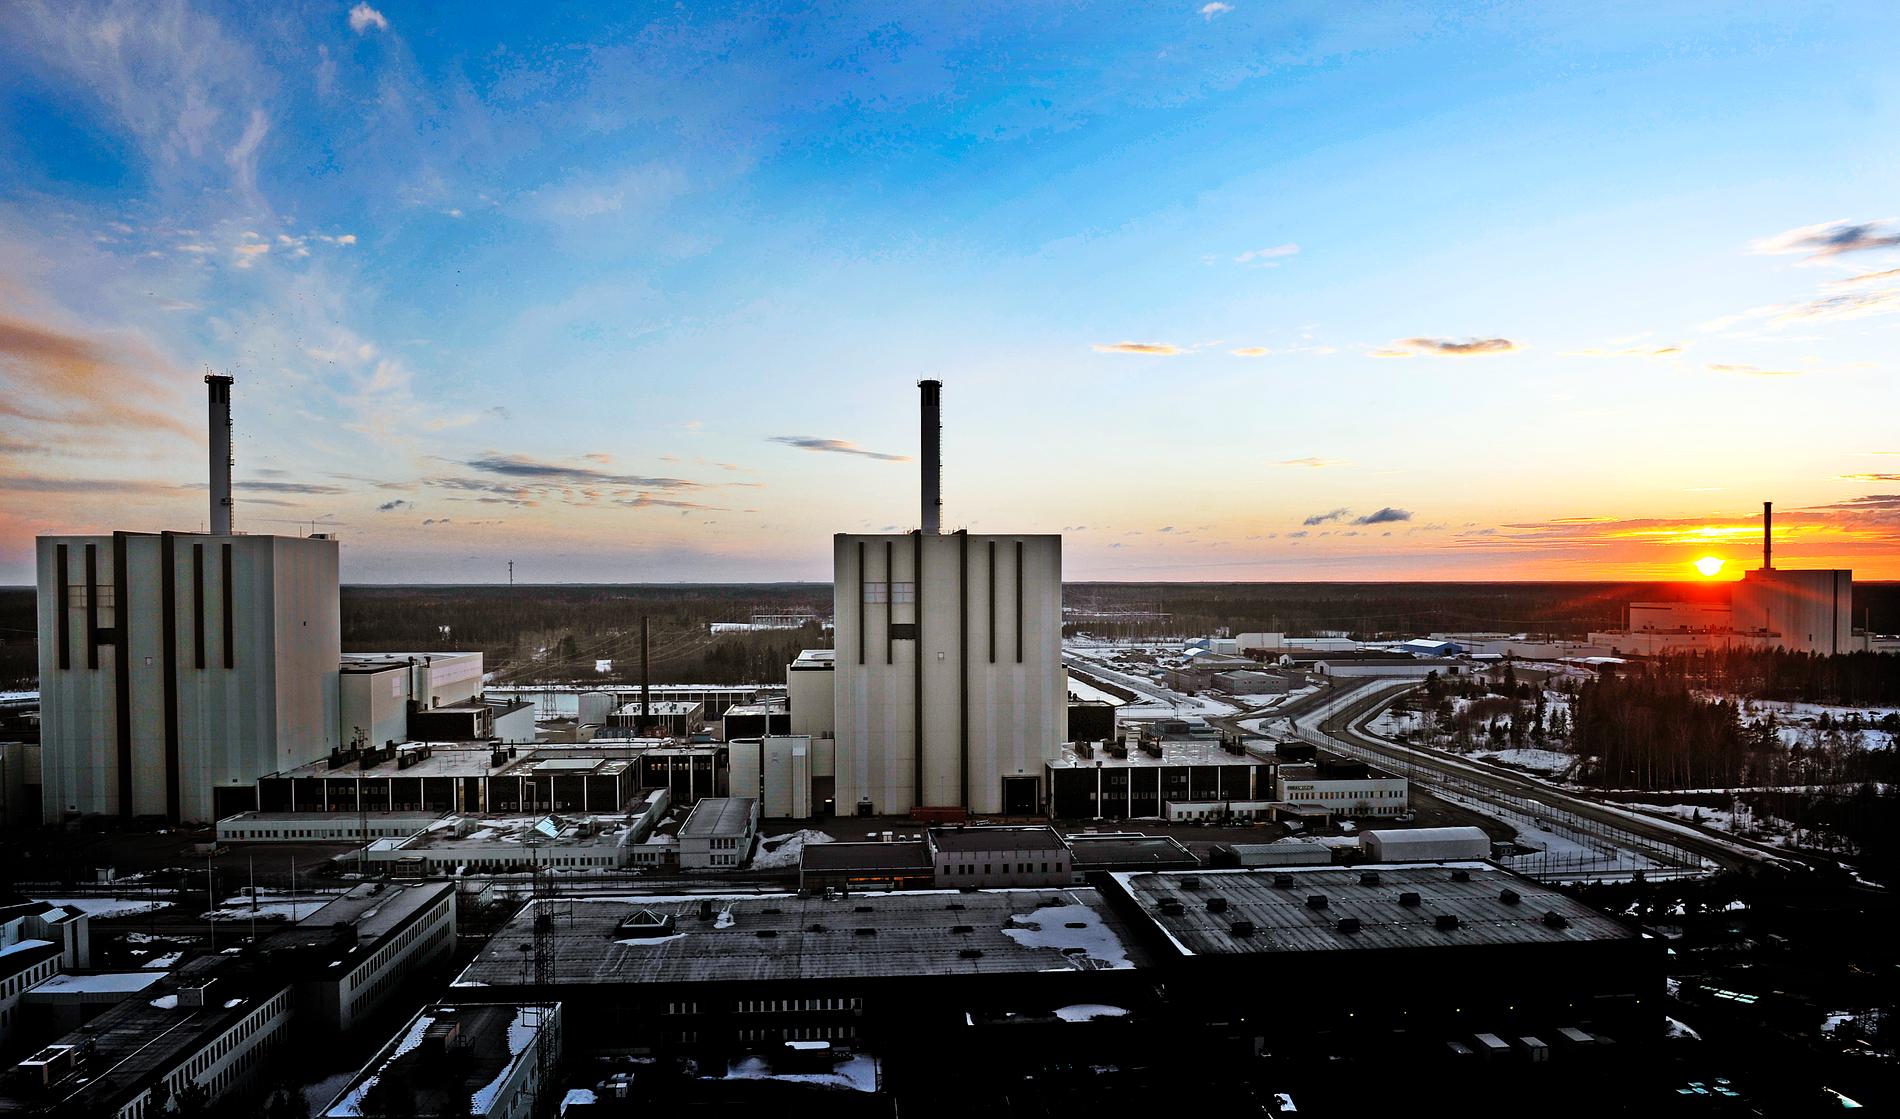 Drönarobservationer har bland annat gjorts vid kärnkraftverket Forsmark. Arkivbild.